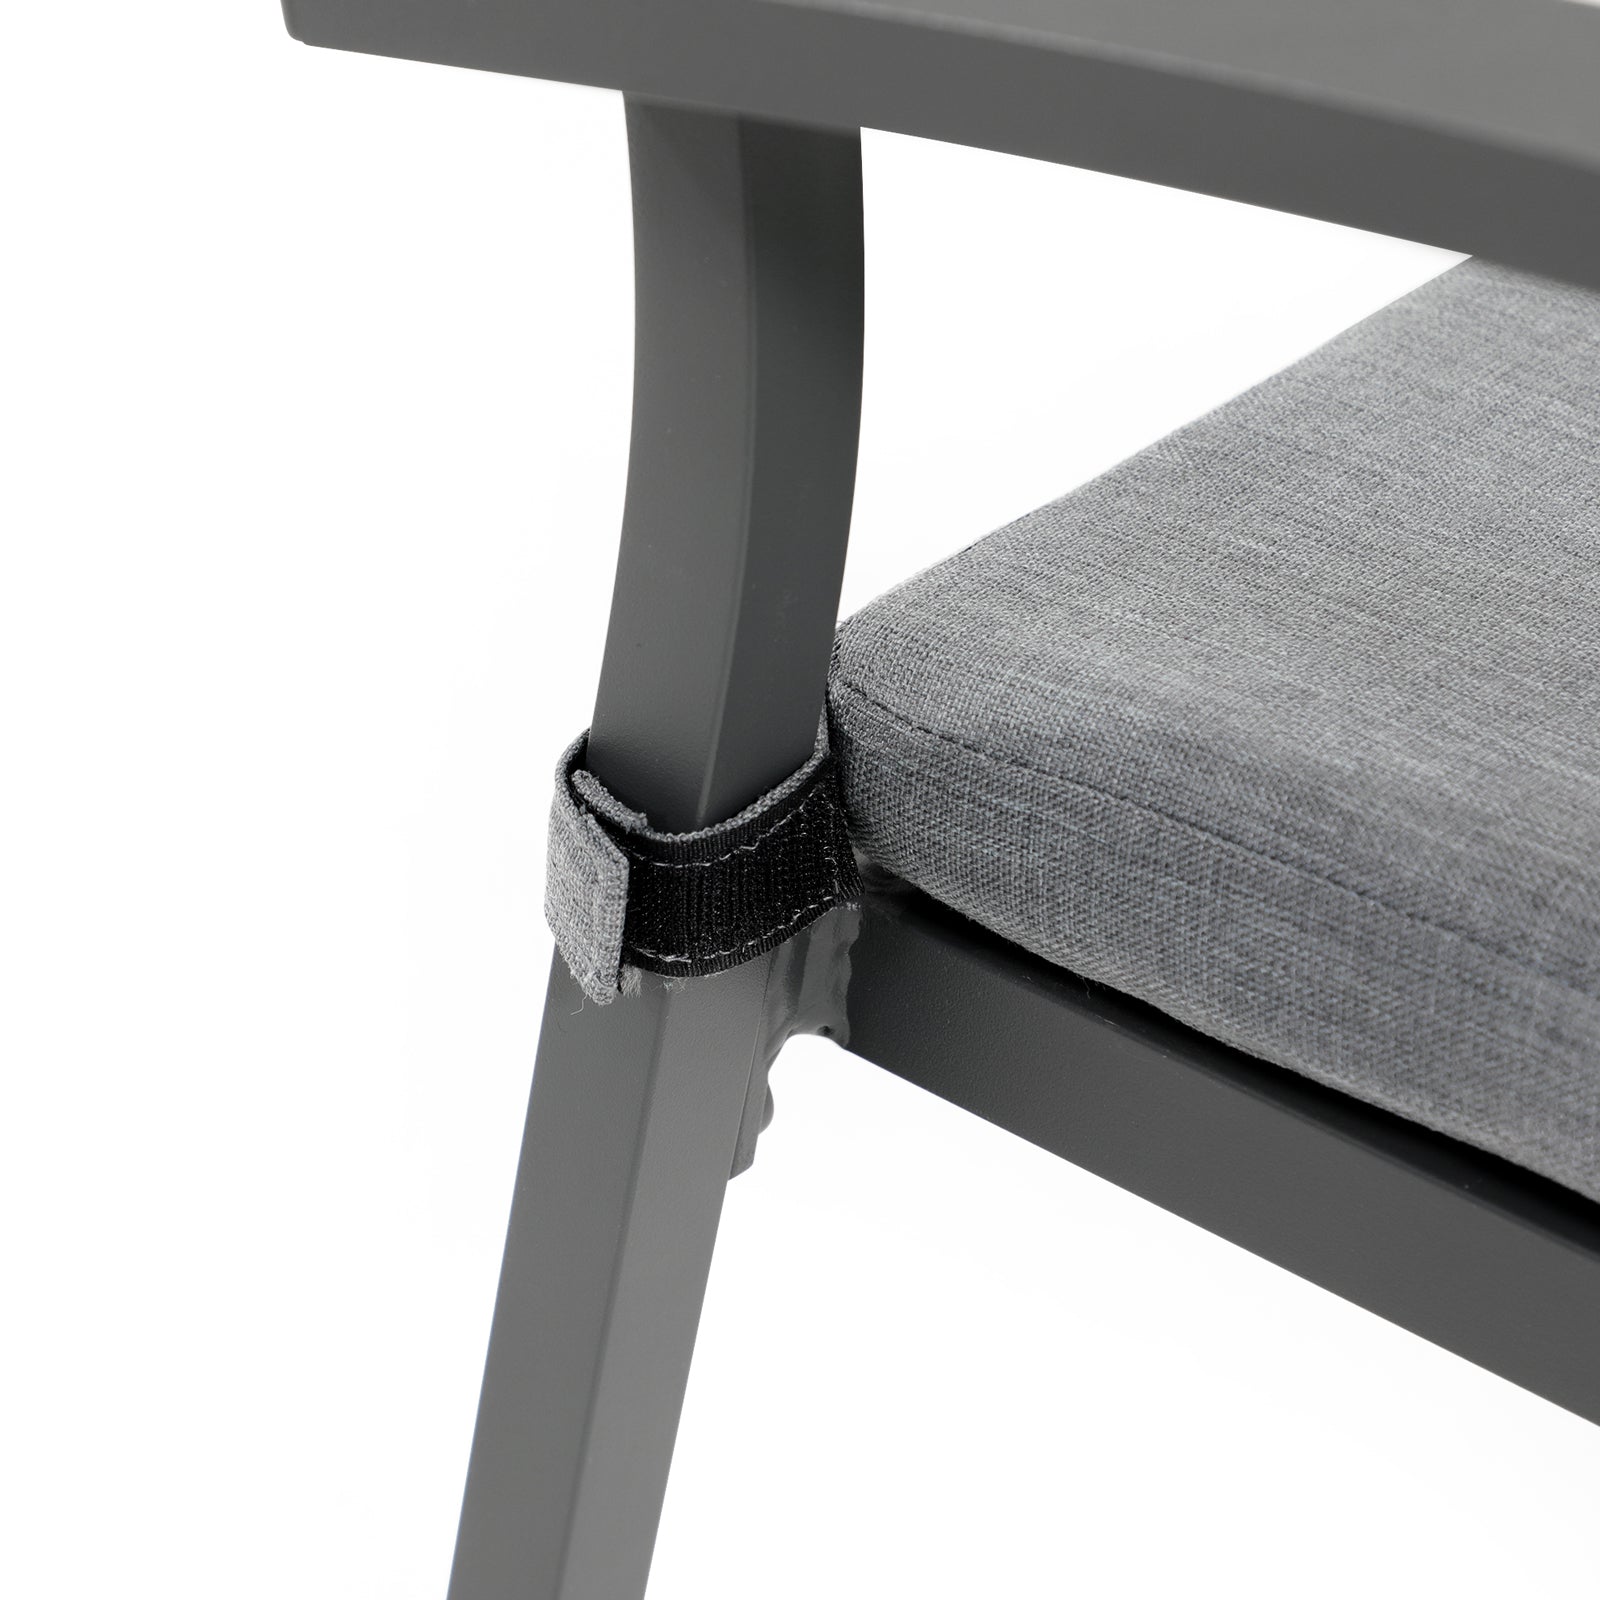 Salina grey outdoor dining chair, aluminum design, tie-on cushion- Jardina Furniture